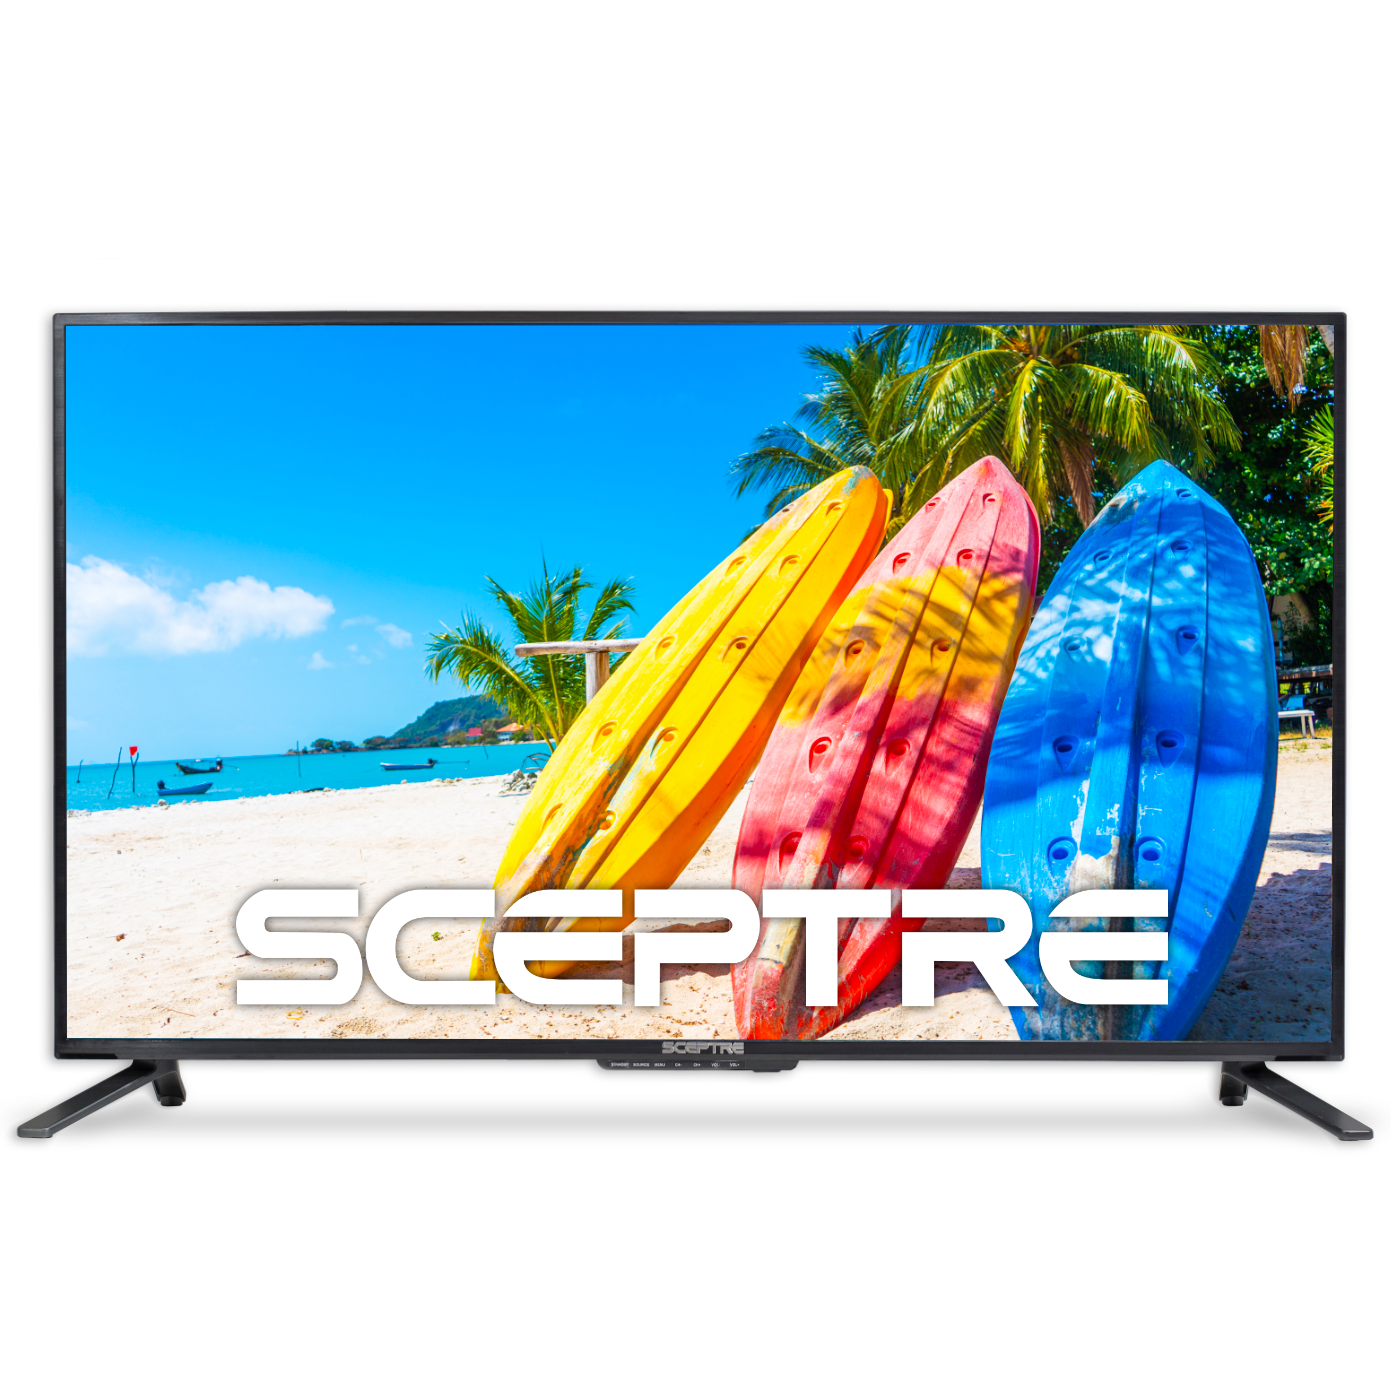 Sceptre 43" 4K UHD TV HDR U435CV-U - Walmart.com